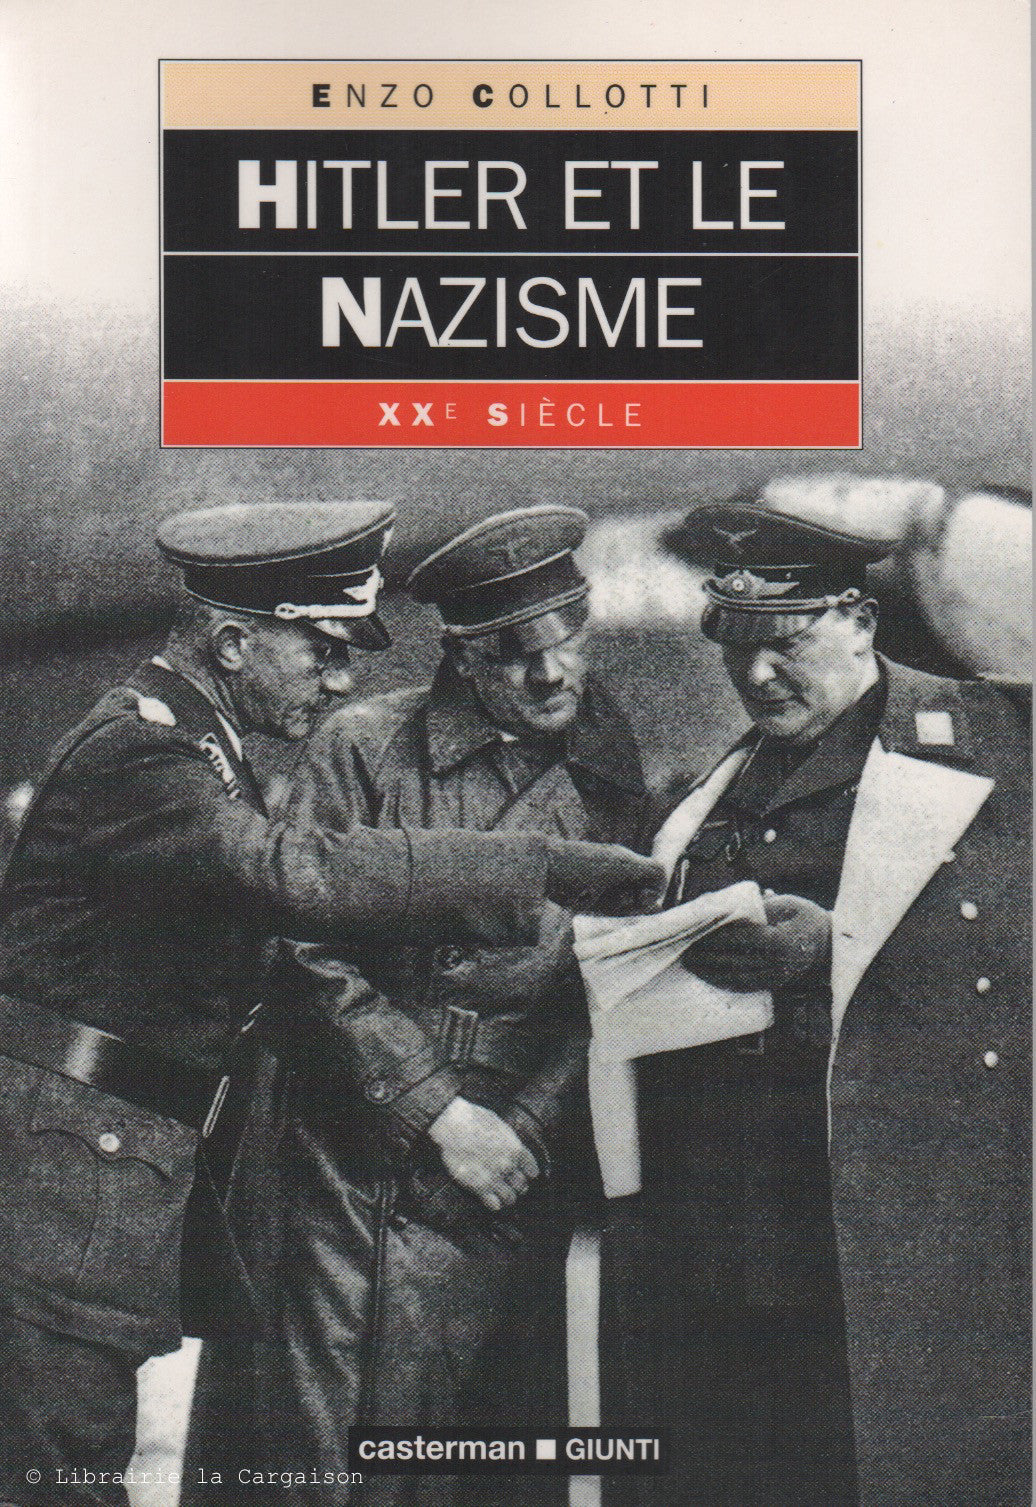 COLLOTTI, ENZO. Hitler et le nazisme